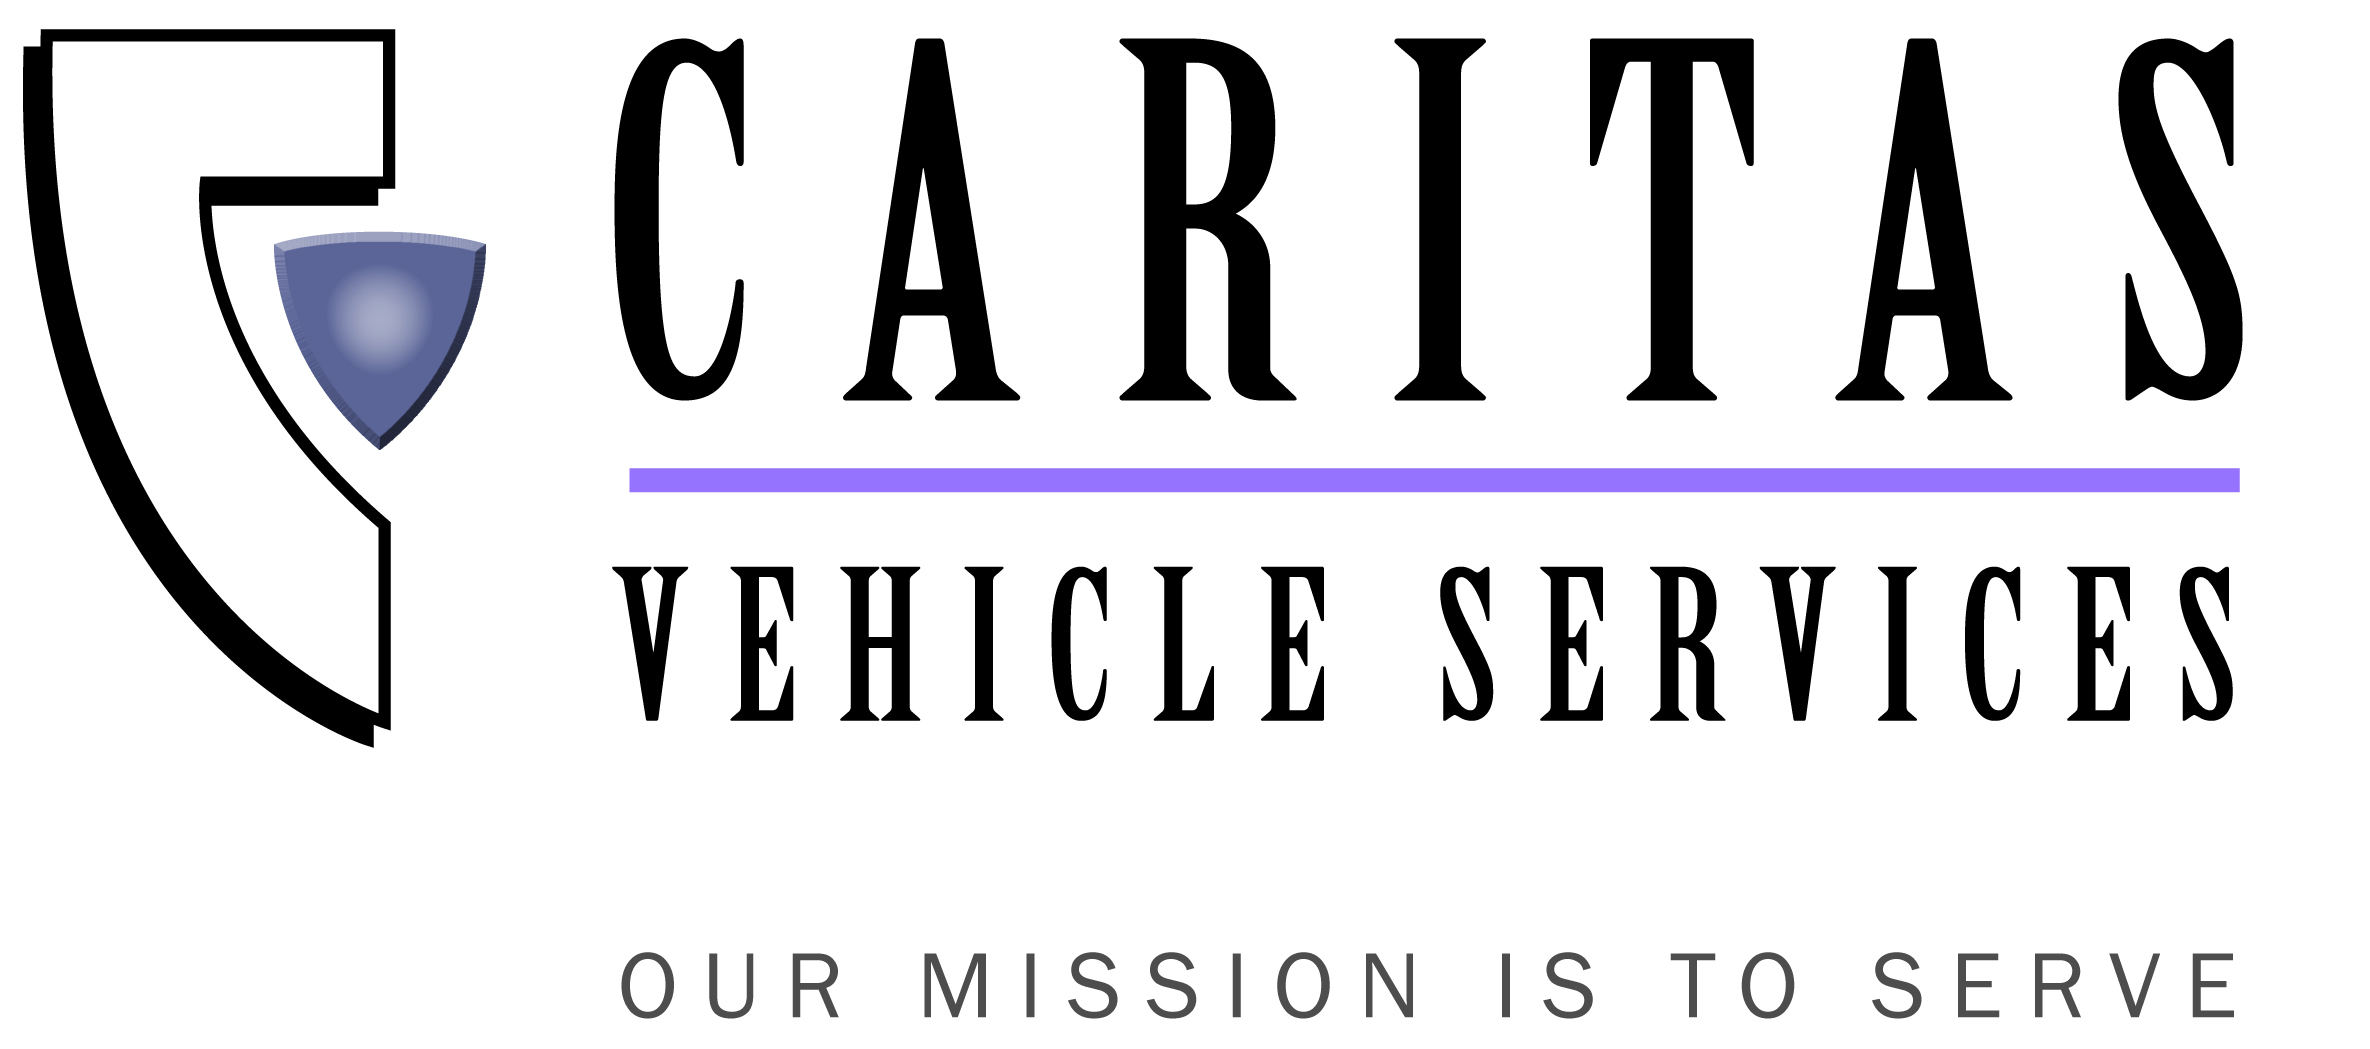 Caritas_Logo